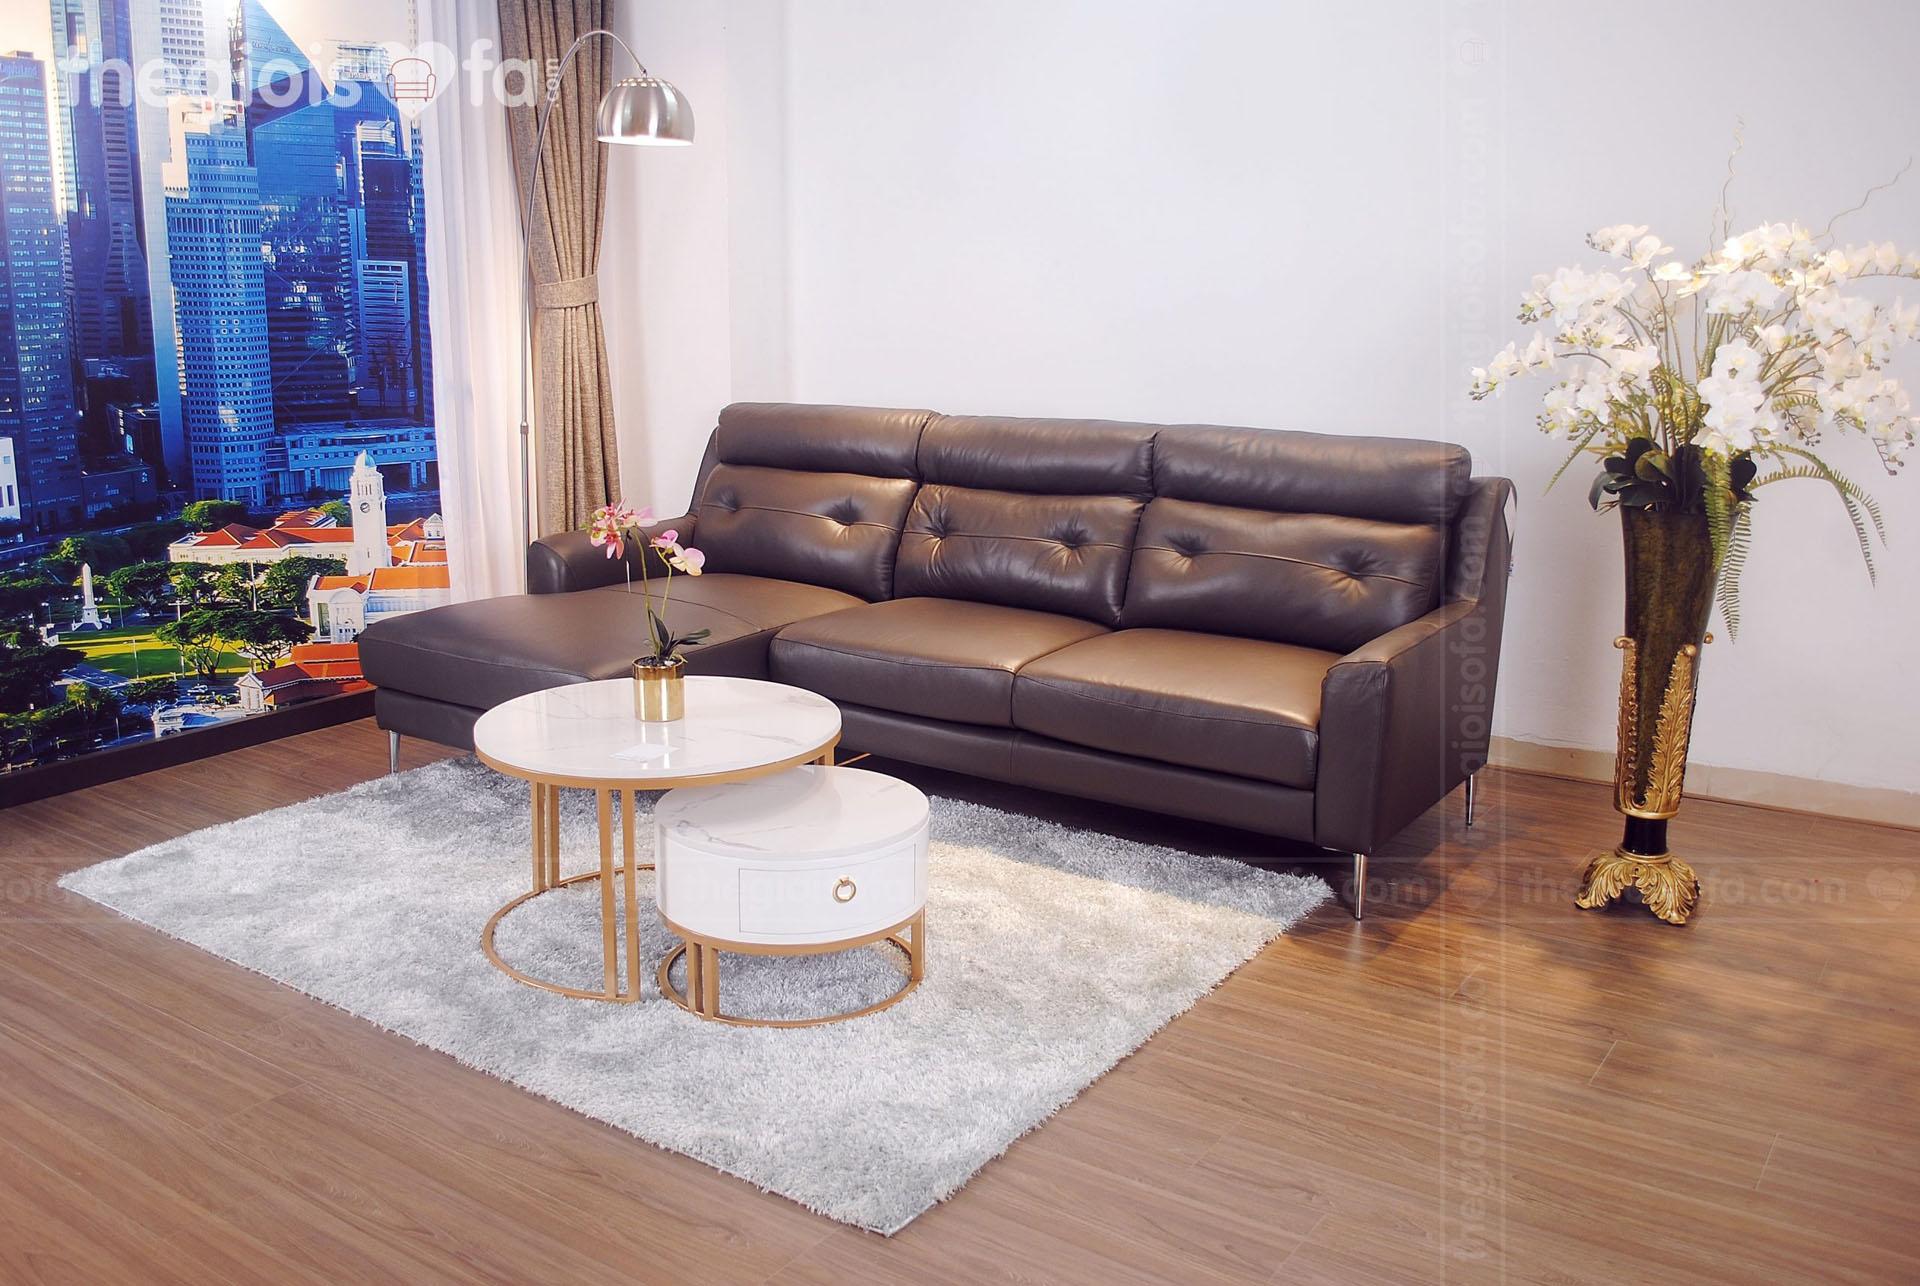 12 Mẫu ghế sofa chung cư hiện đại siêu tiết kiệm diện tích 2021